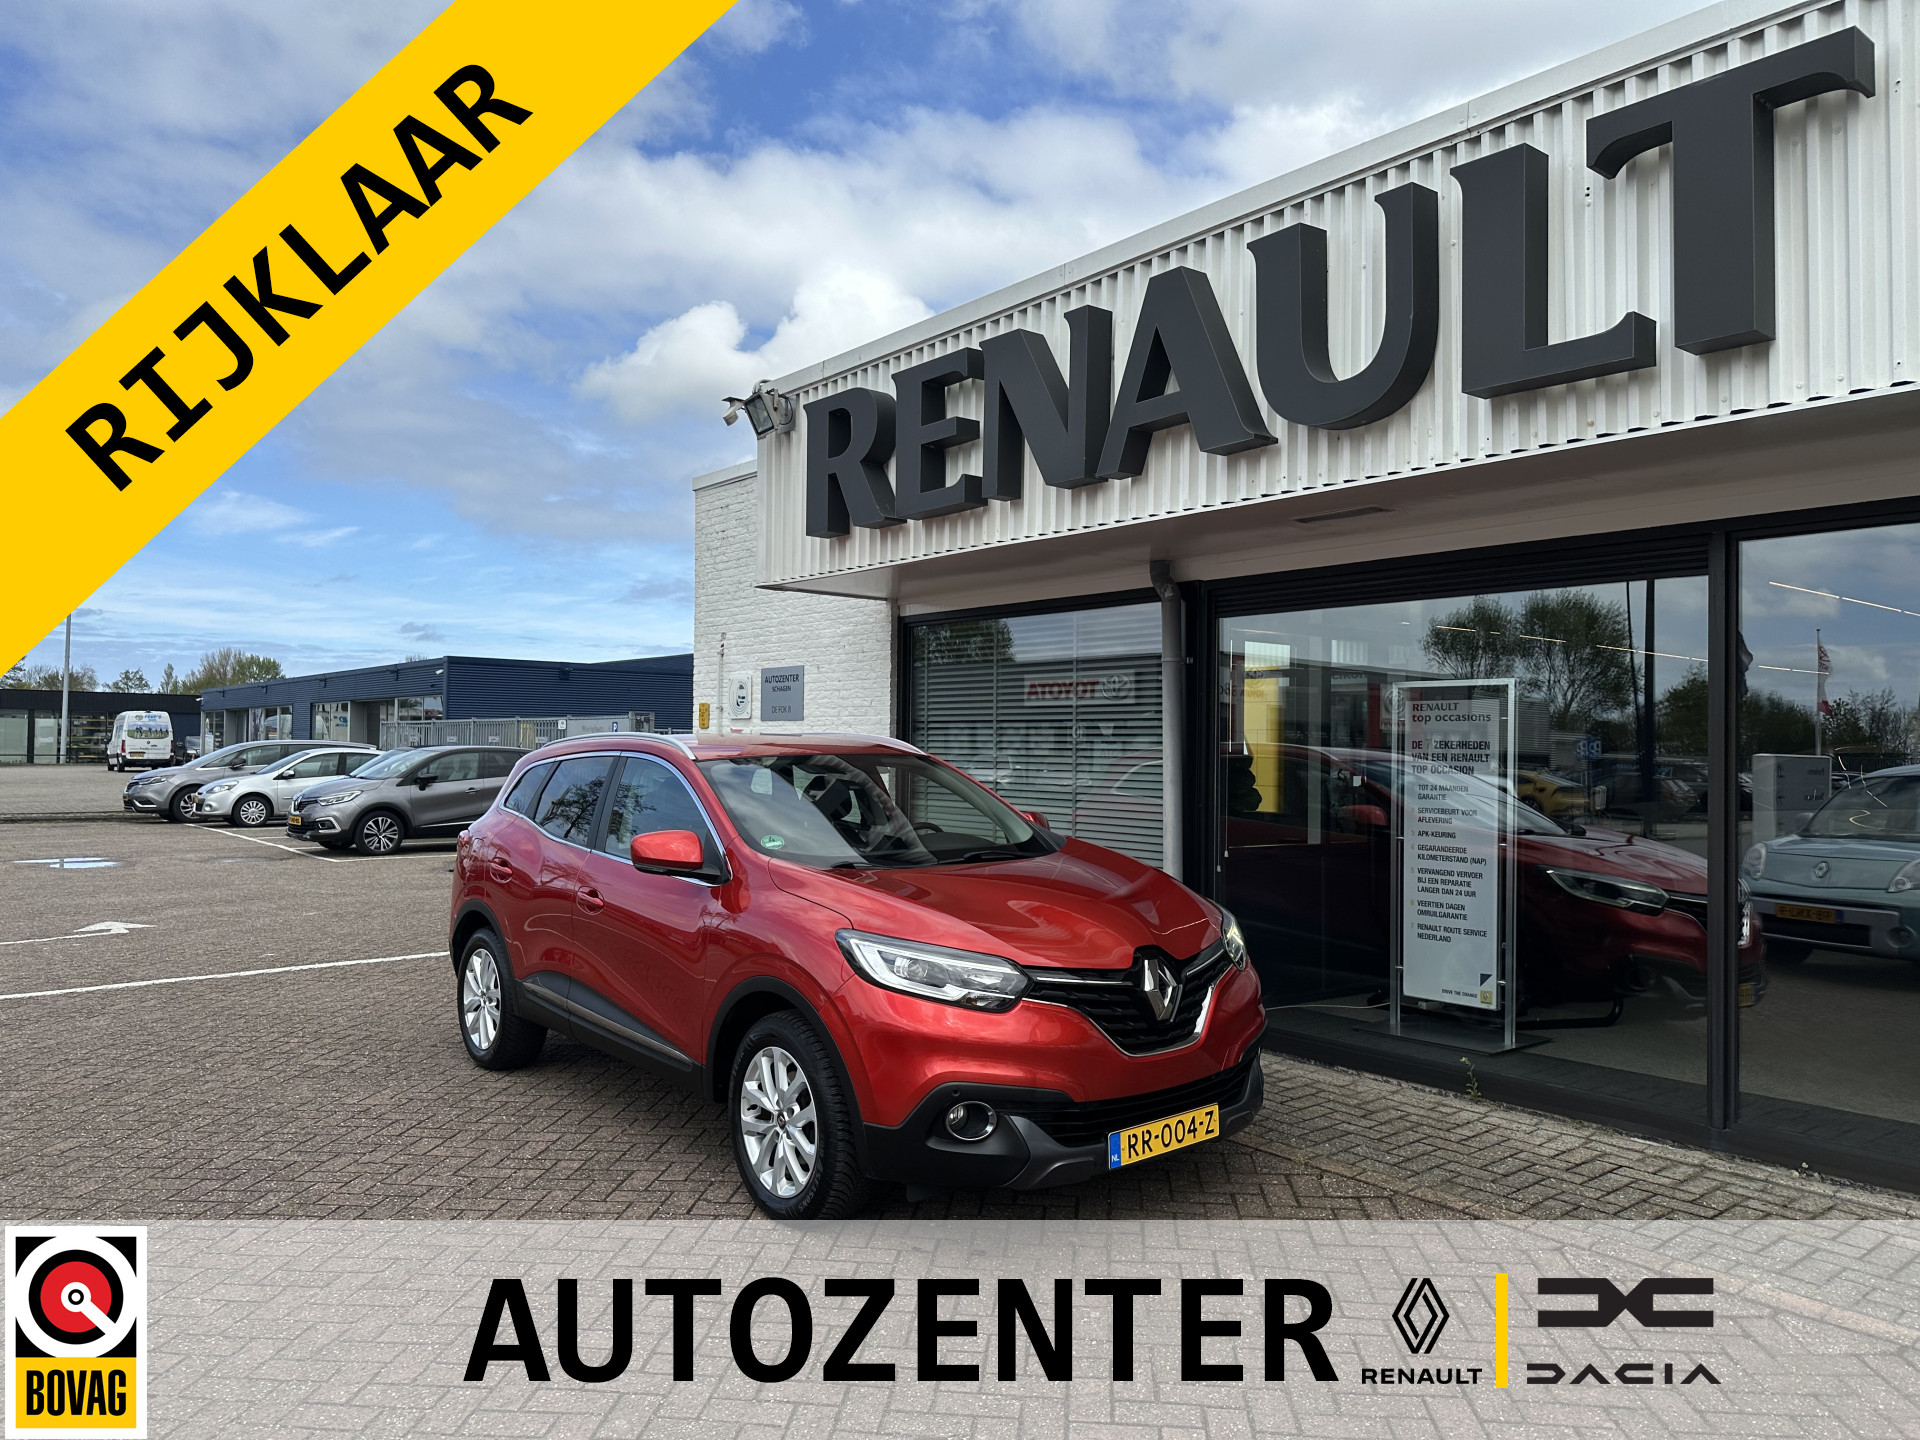 Renault Kadjar Intens Tce 130 | trekhaak wegklapbaar | tijdelijk gratis Top Afleverpakket twv Eur 695 bij viaBOVAG.nl